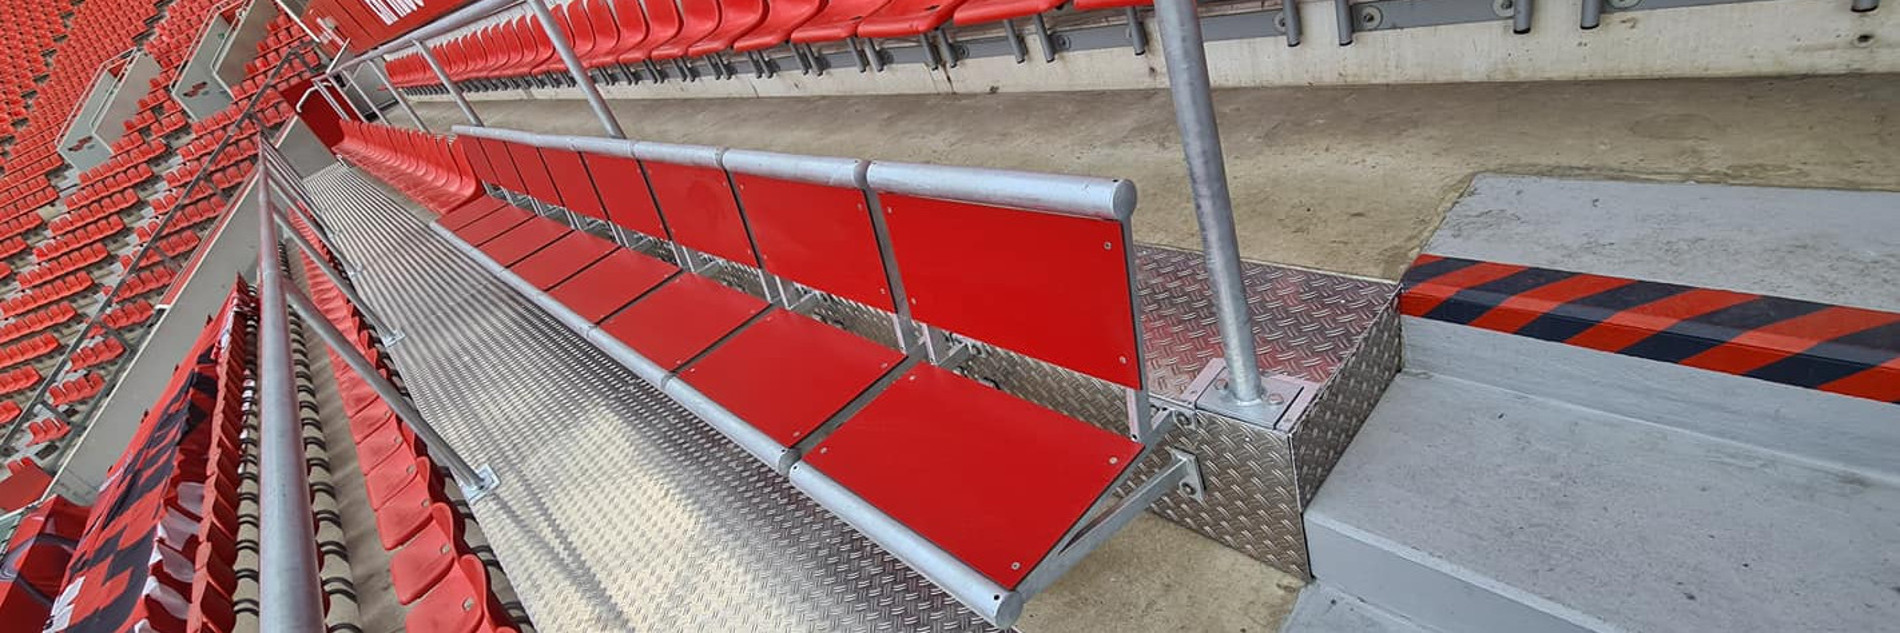 Extra breite Sitze mit mehr Beinfreiheit in der Leverkusener BayArena. Daneben die üblichen Sitzschalen.